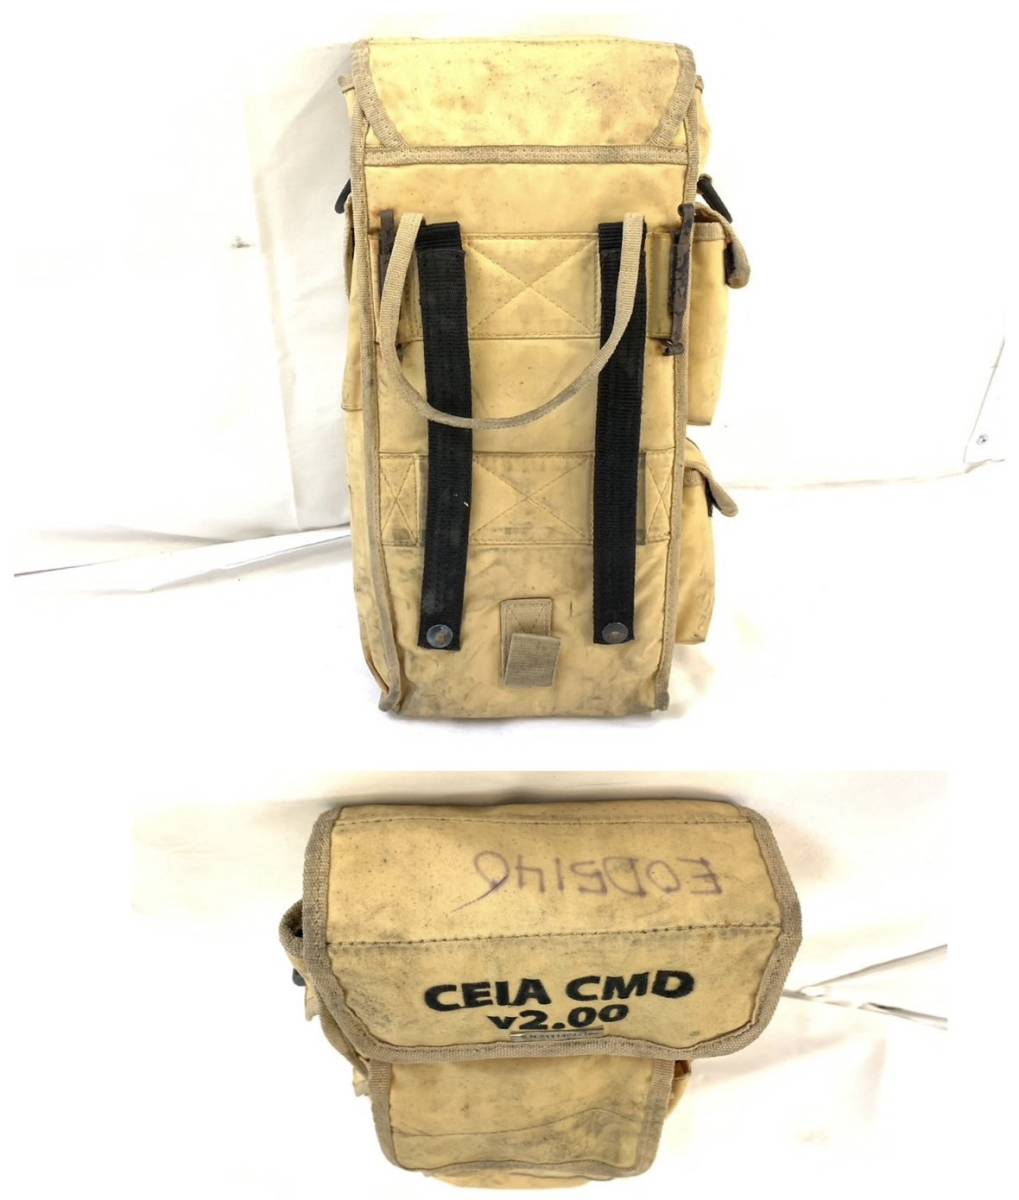 【米軍放出品】☆金属探知機 メタルディテクター Ceia CMD 2.00 収納バッグ付き 地雷探知機 USMC (100)☆RK17LK-2#23-T_画像9